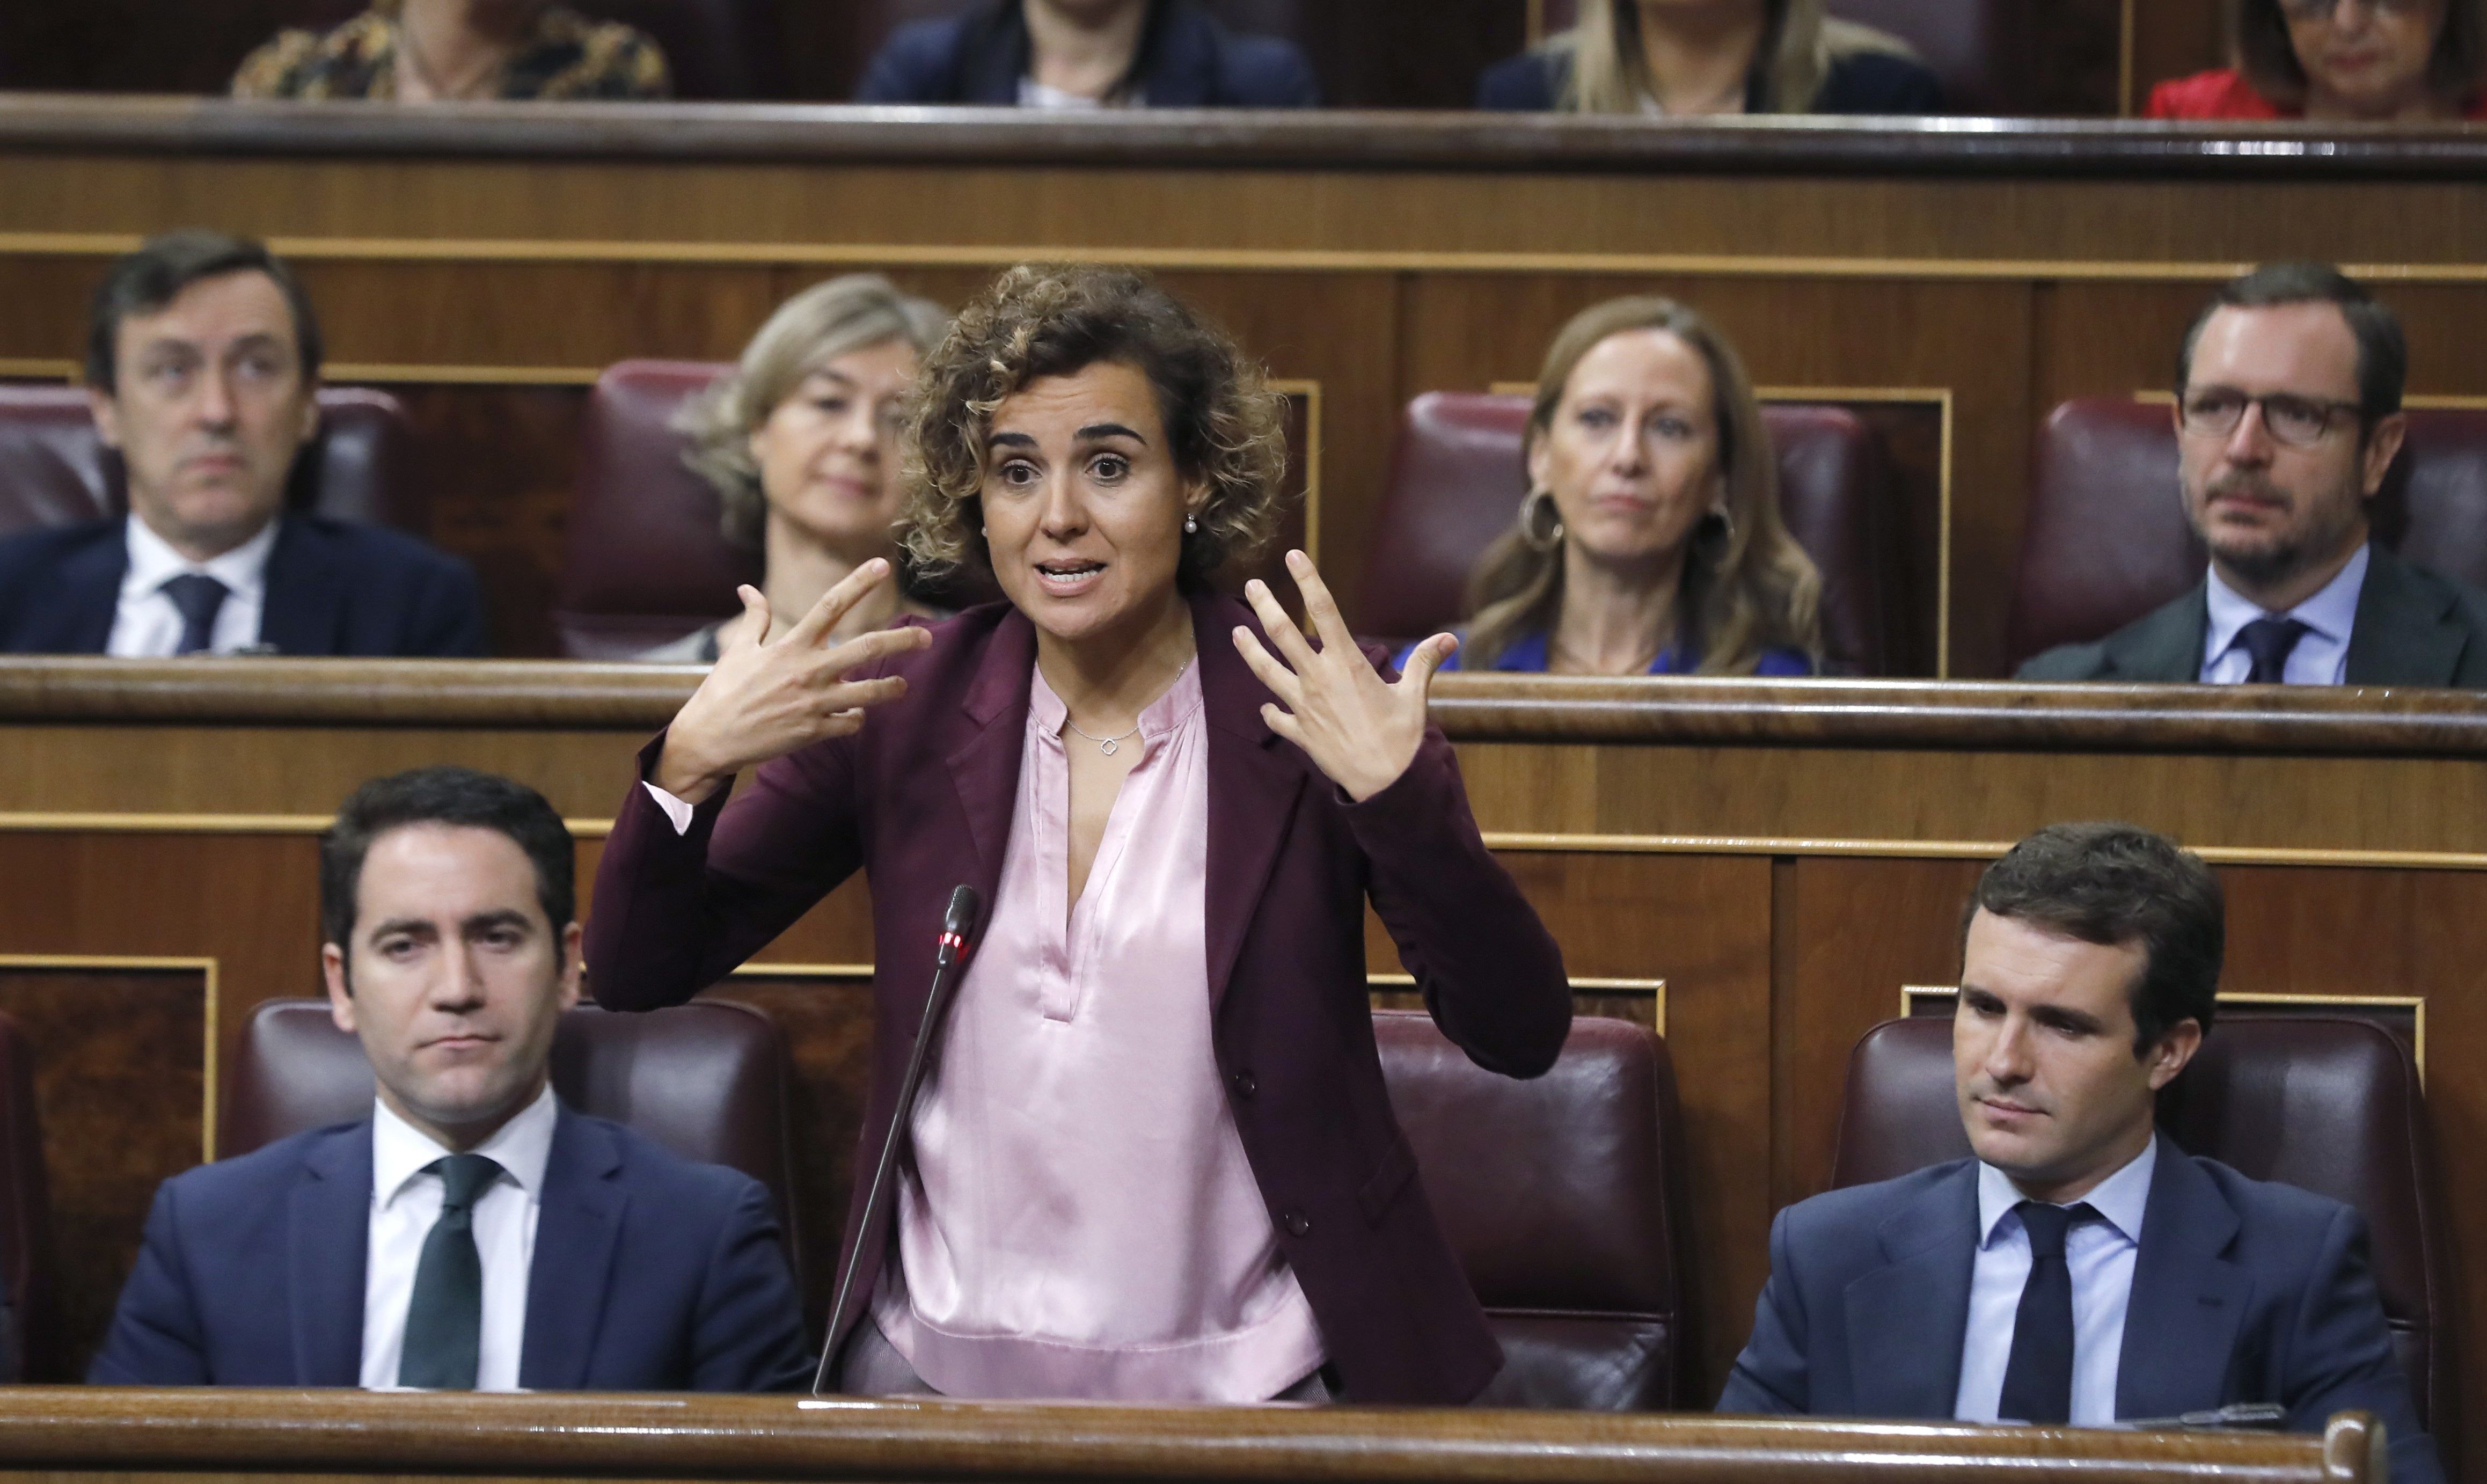 El PP acusa Sánchez de “traïció a Espanya i la legalitat” per reunir-se amb Torra